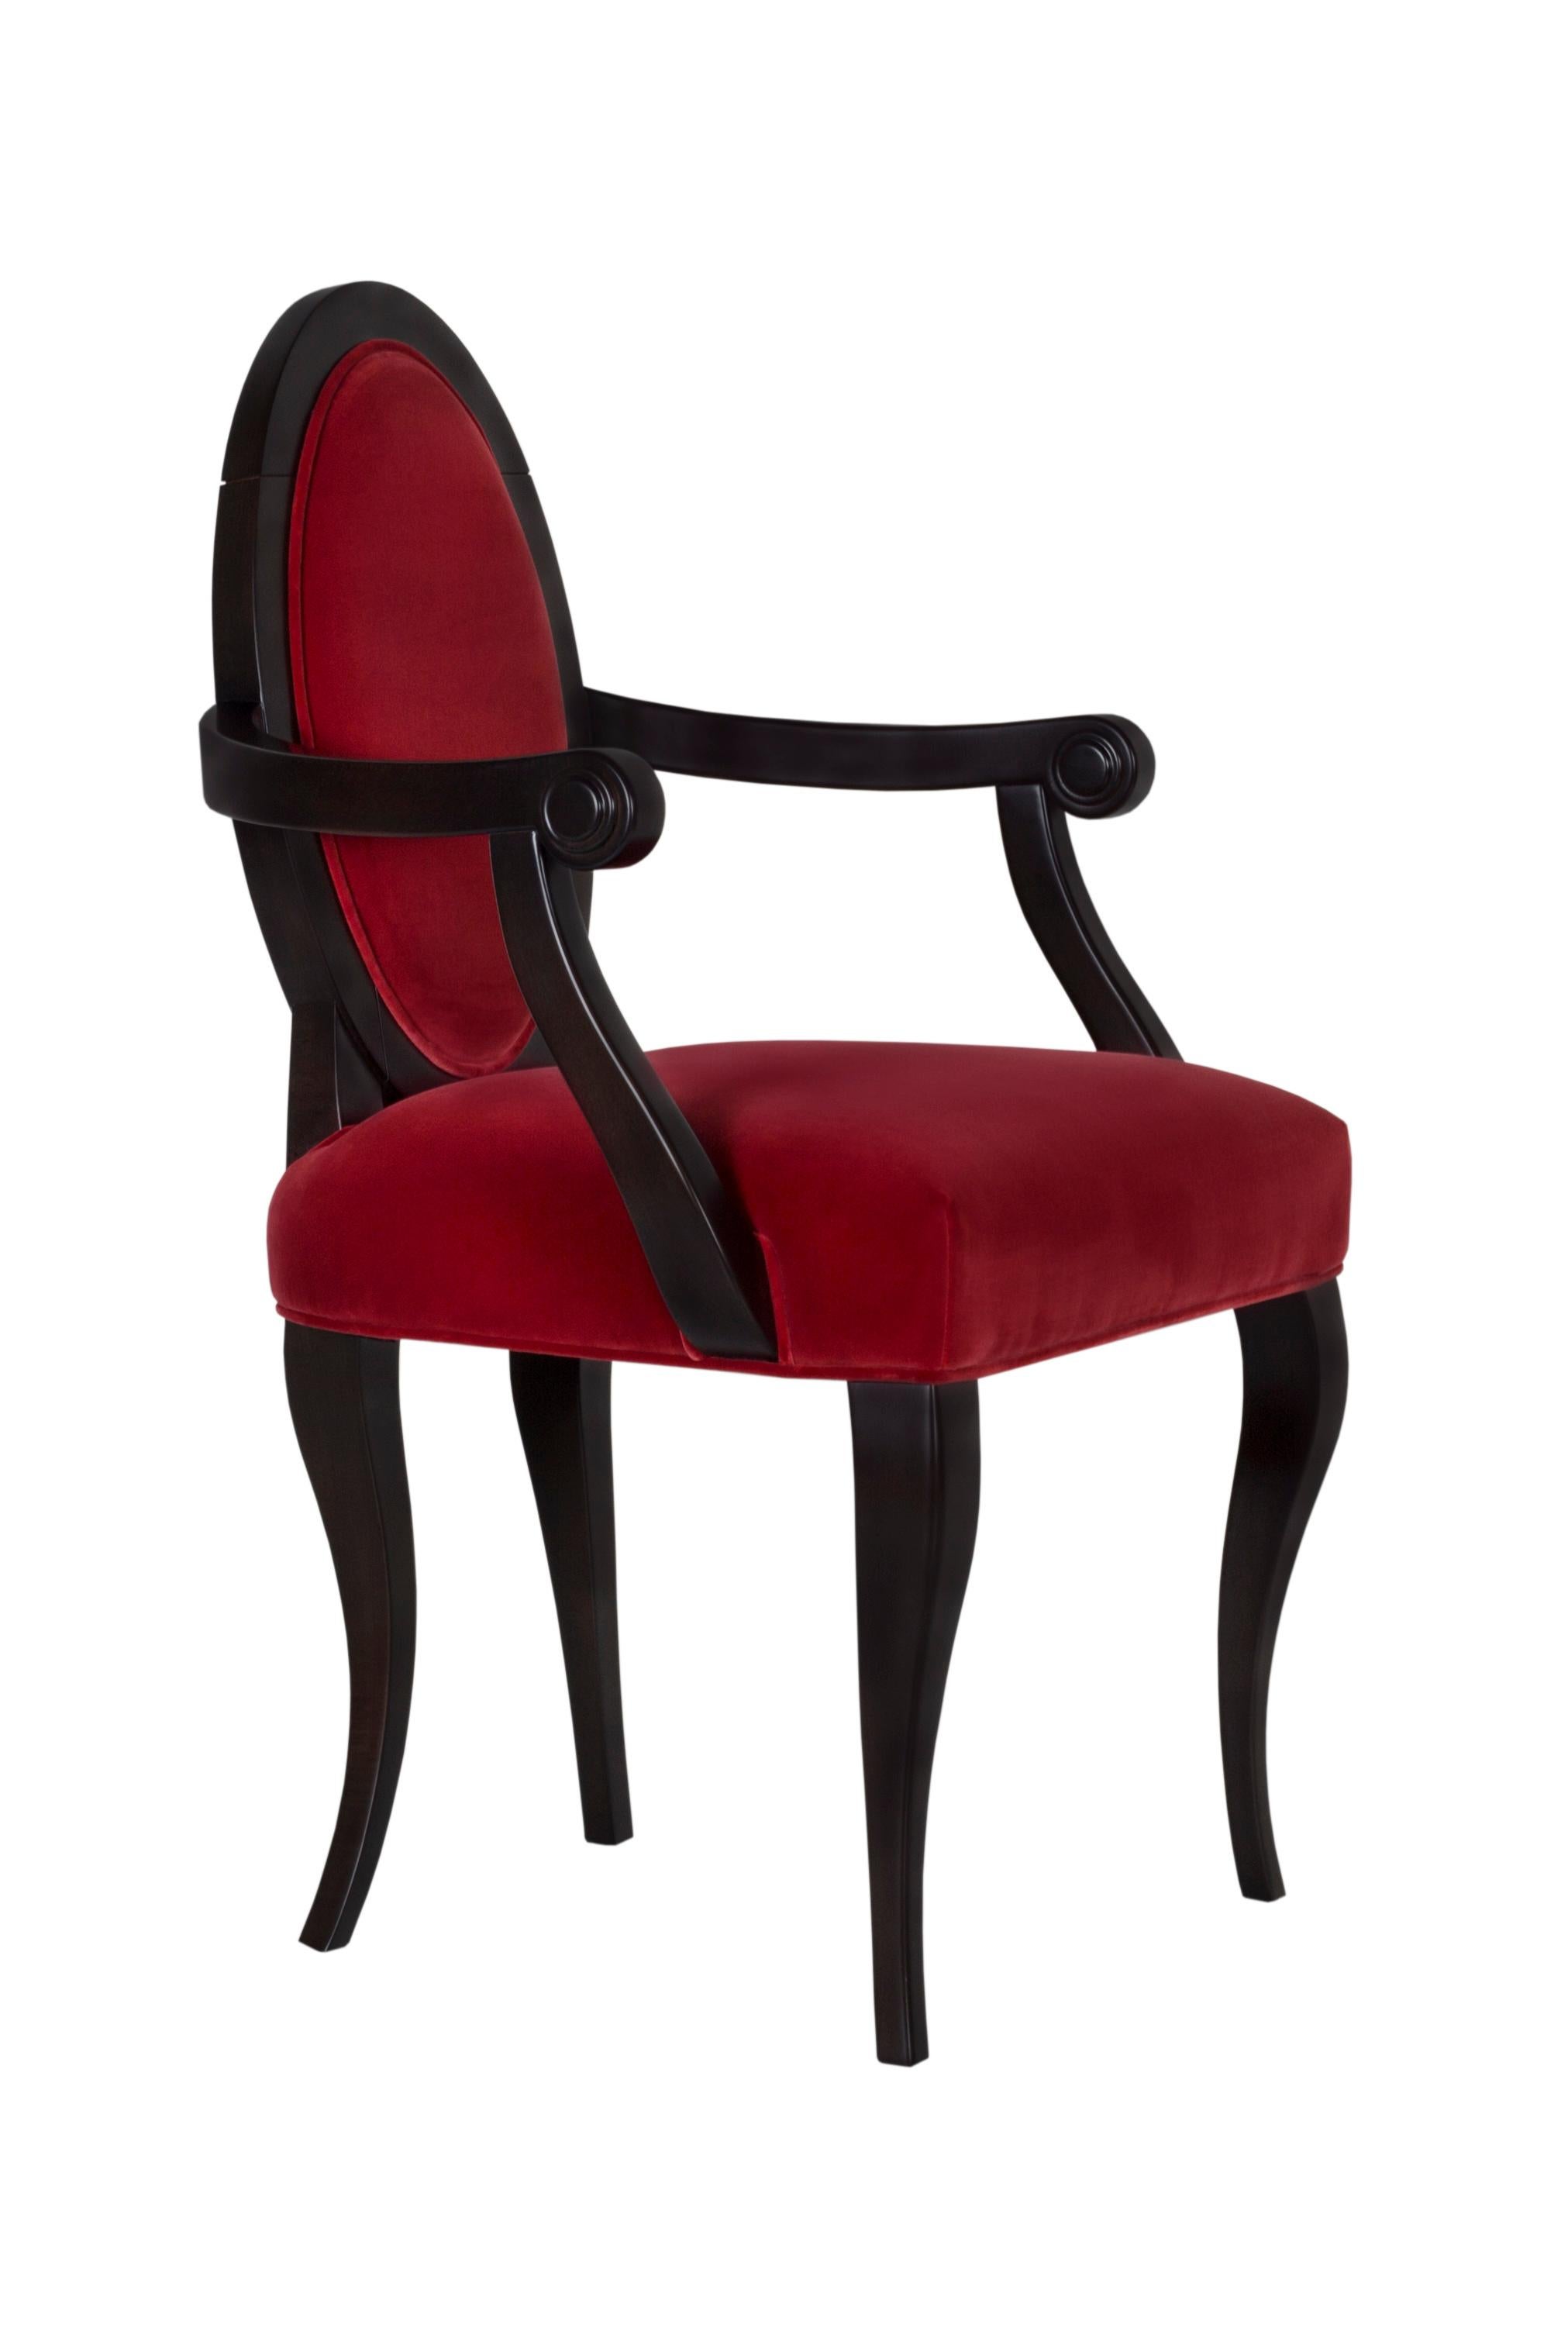 Neoclassical Dining Chairs Ellipse Upholstered Red Velvet Handmade Portugal Greenapple For Sale